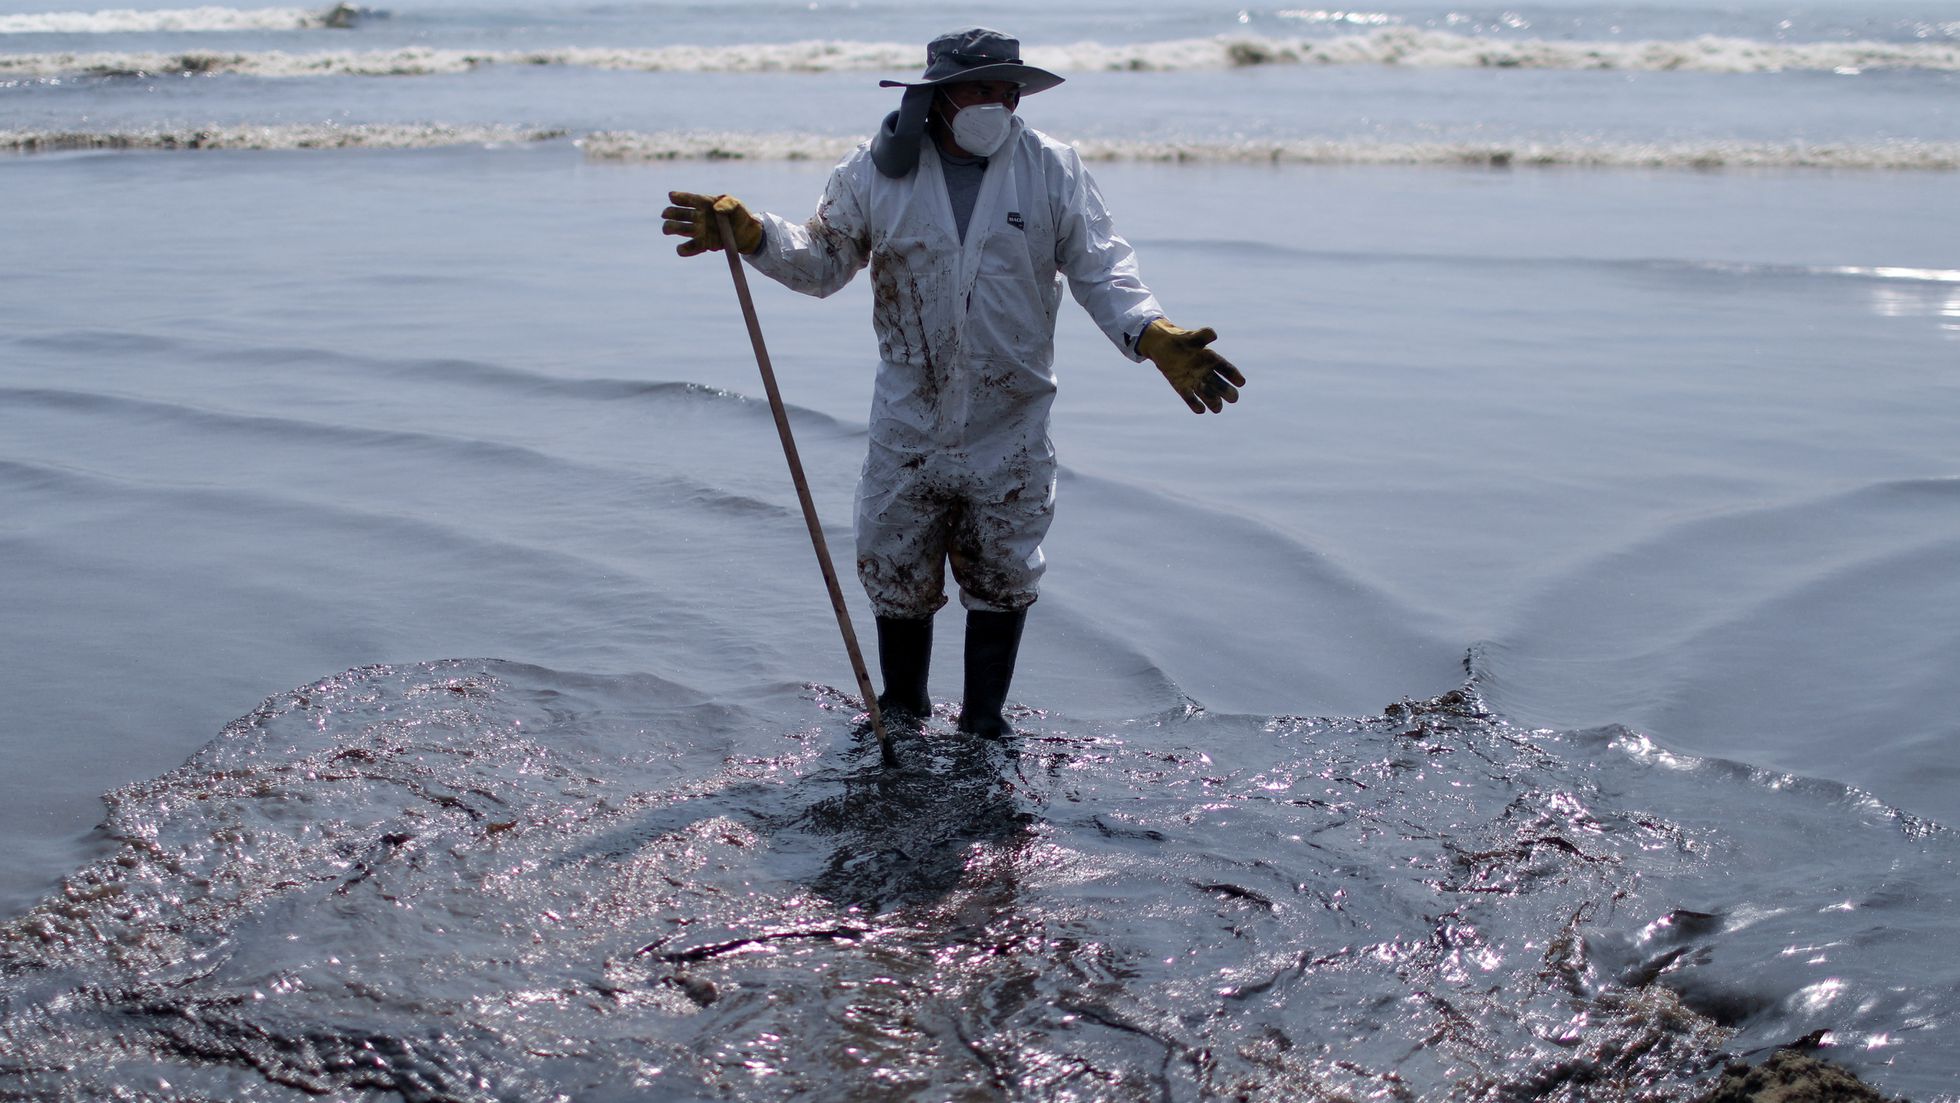 Derrame de petróleo en la costa ecuatoriana: ¿Sabotaje o accidente? Petroecuador investiga el incidente